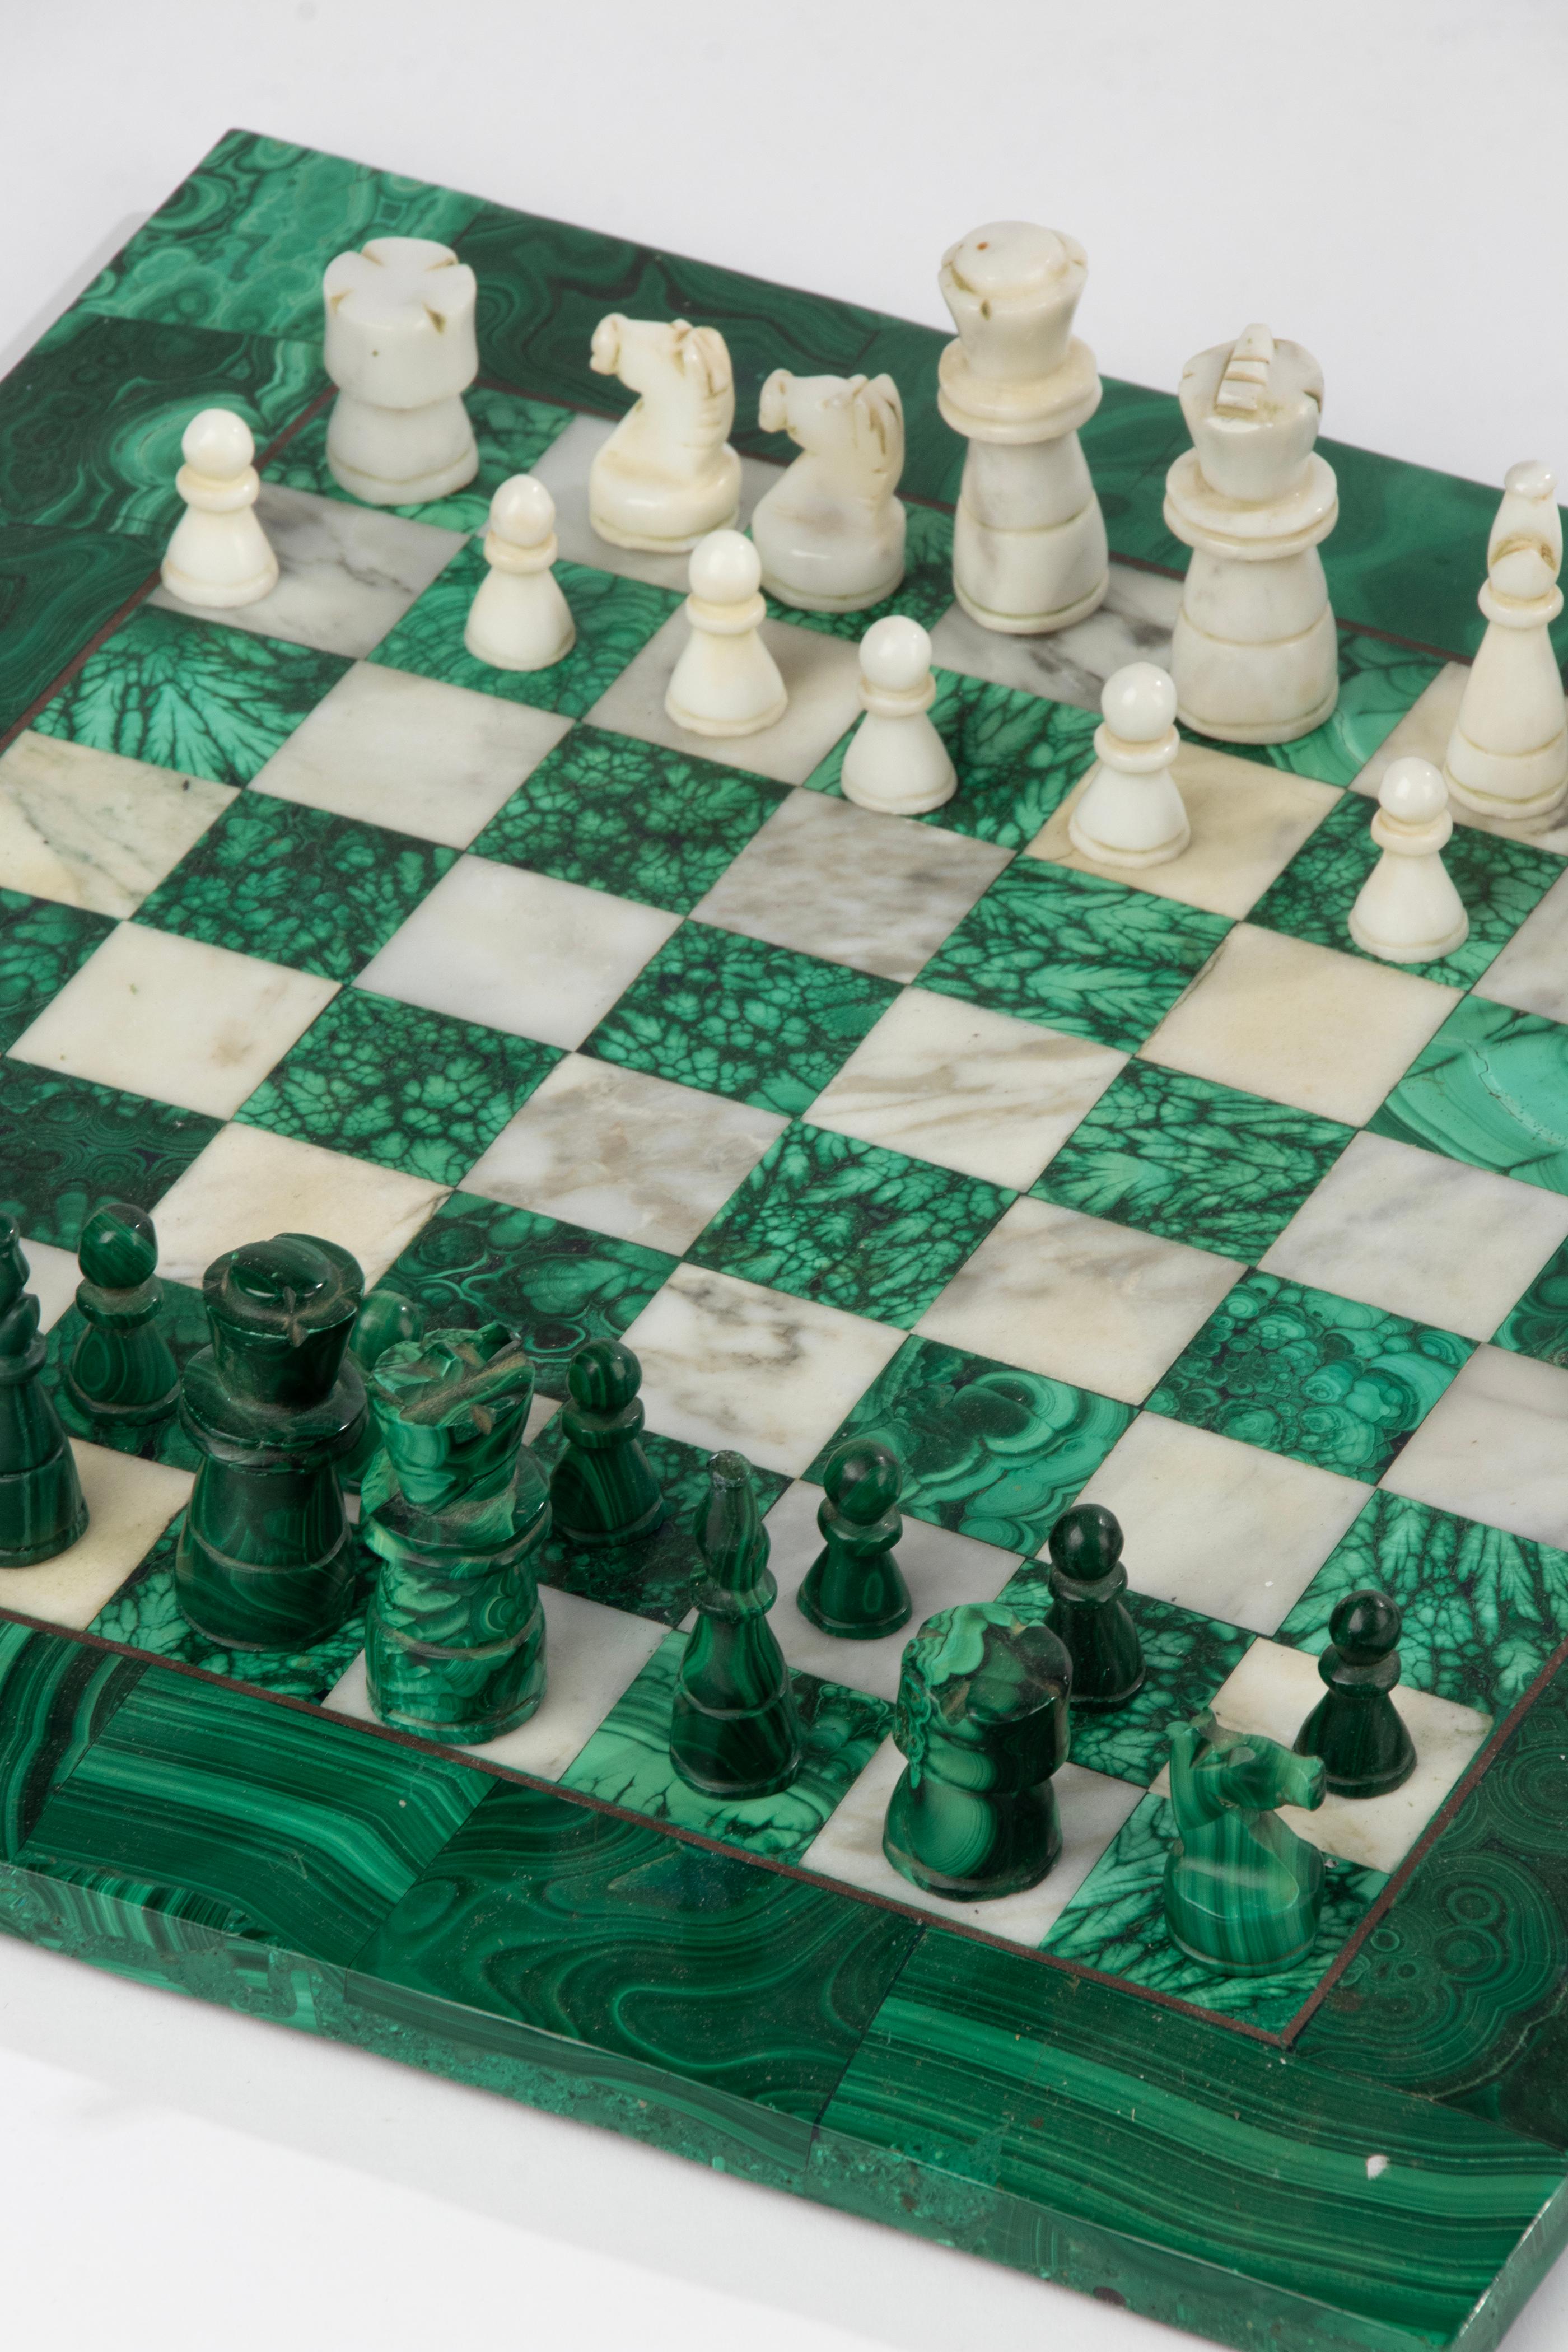 Jeu d'échecs moderne du milieu du siècle, en malachite et marbre. Le jeu d'échecs a probablement été fabriqué en Italie vers 1960.
Les pièces d'échecs sont également en malachite et en marbre. Les pièces d'échecs ont une hauteur de 3 à 6 cm. Les